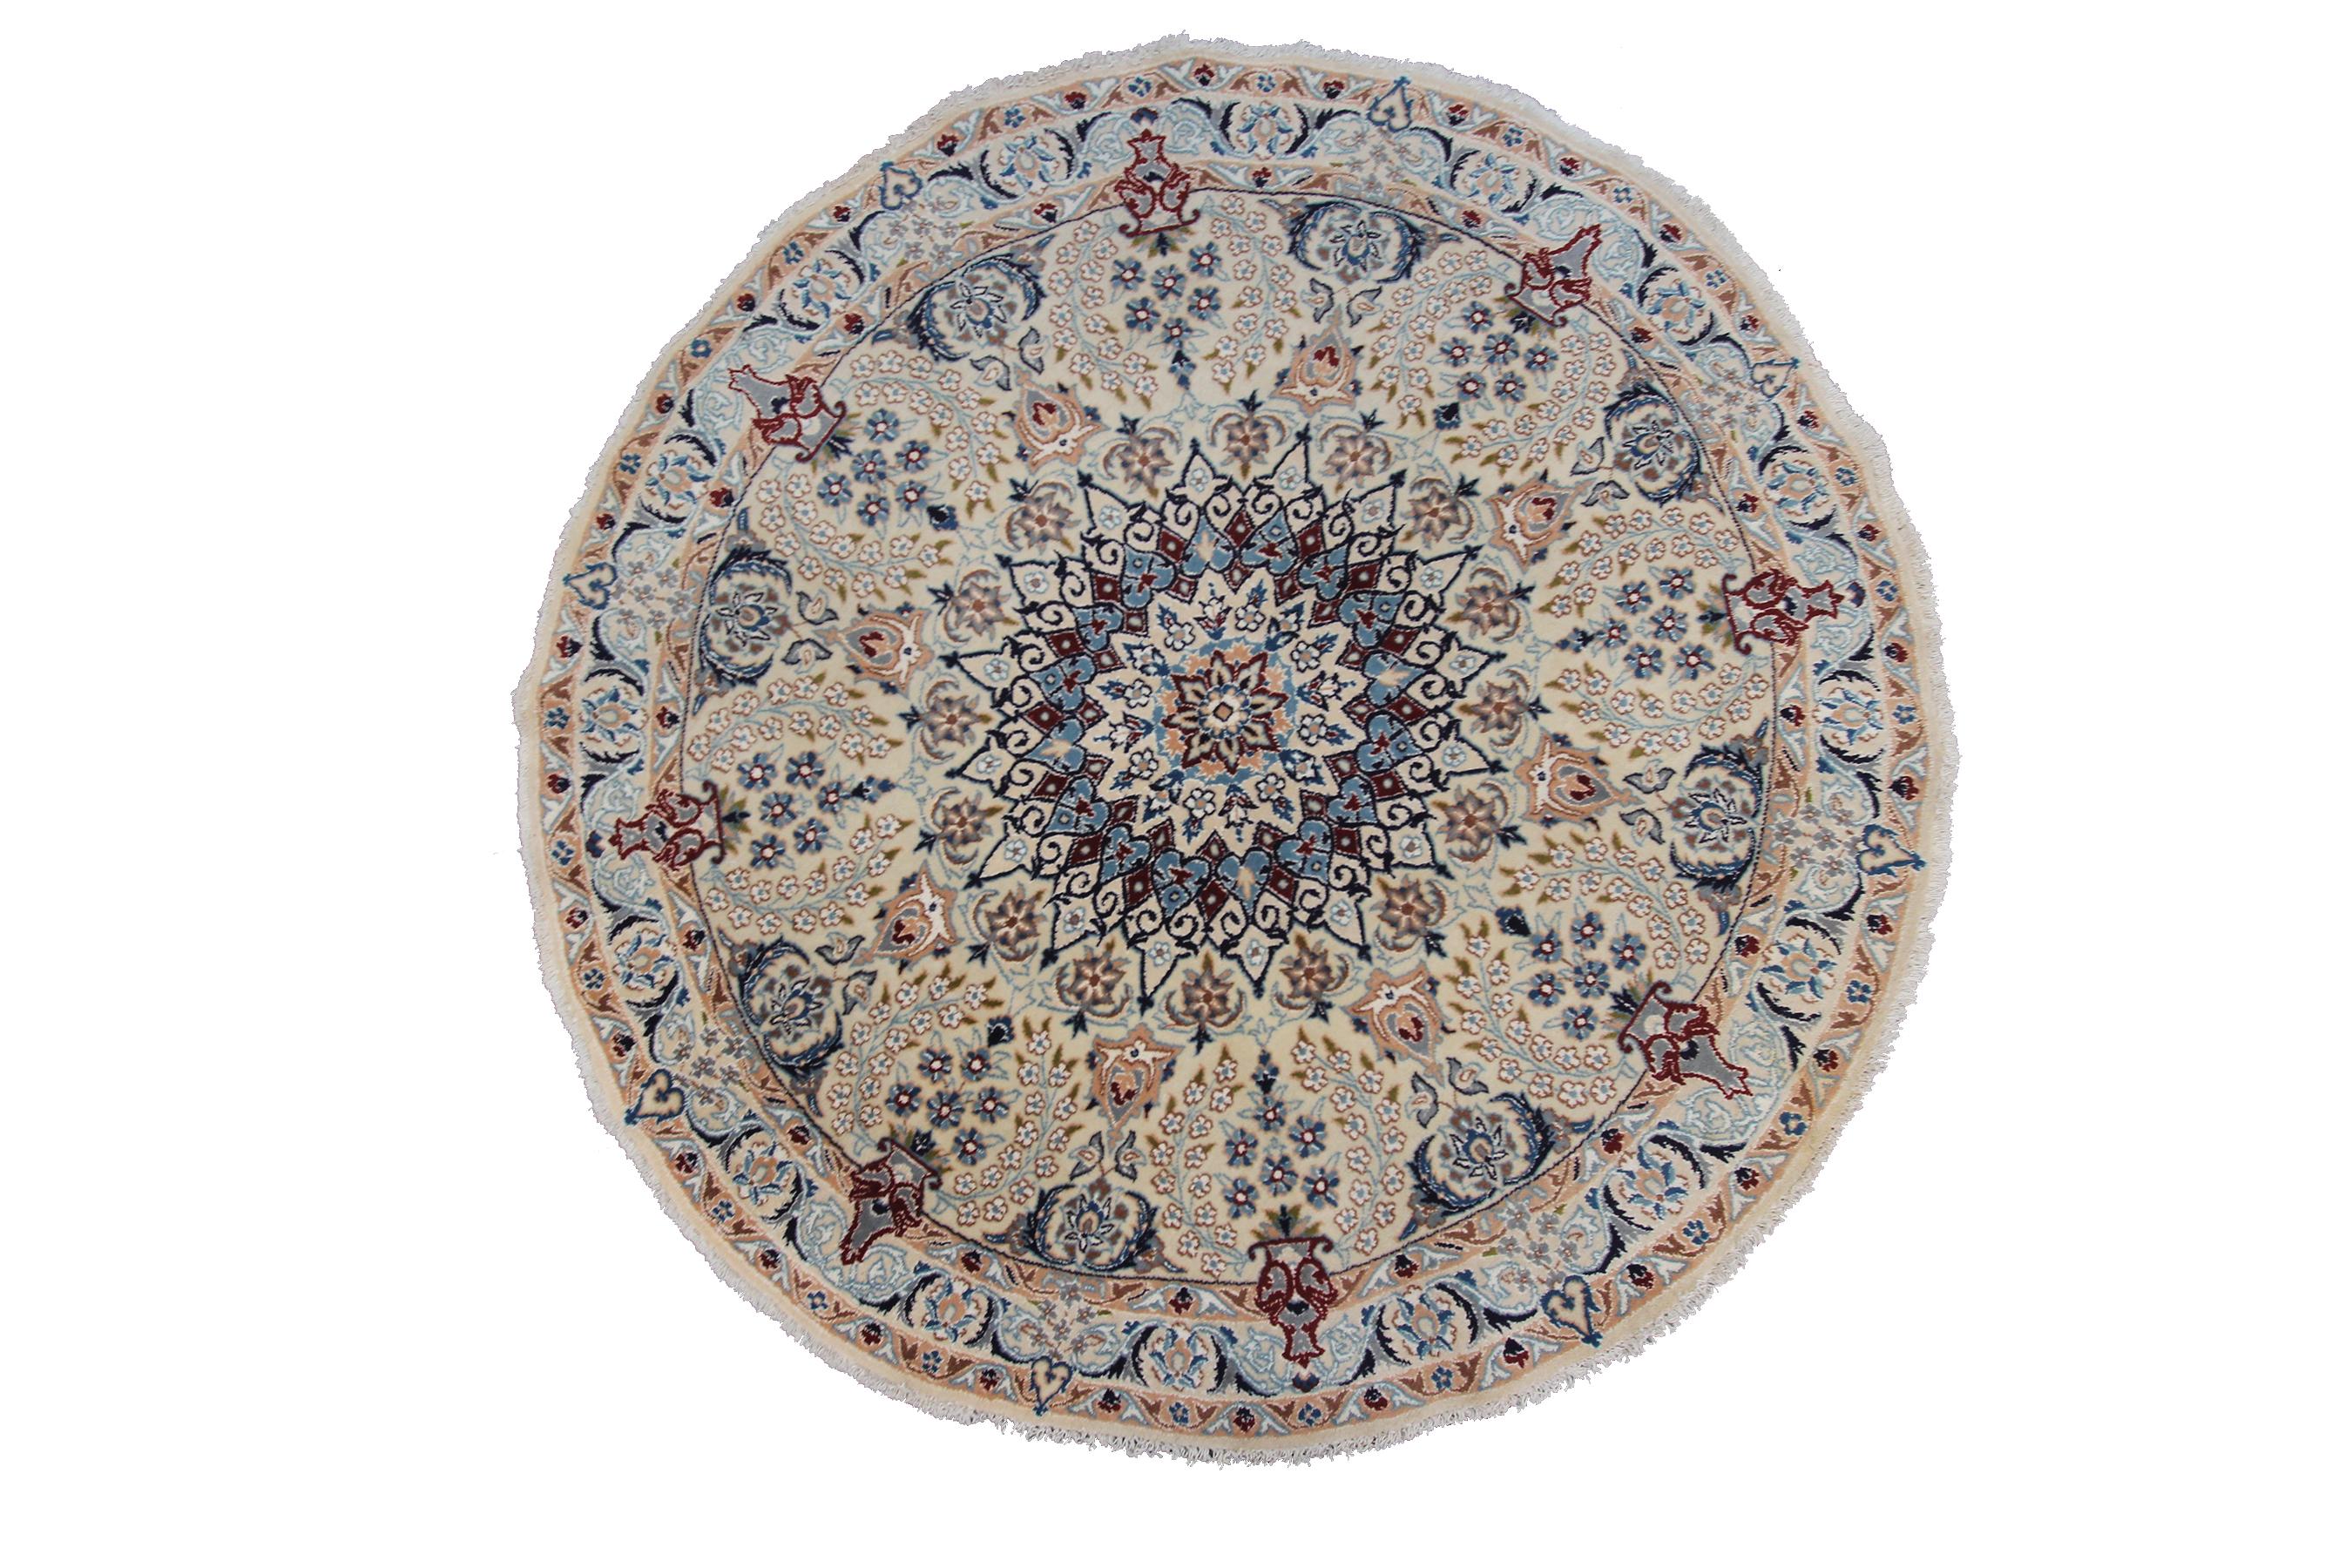 Rare Nain Rug Beautiful Wool & Silk Authentic Handmade rug 
5' Round
147cmx147cm

